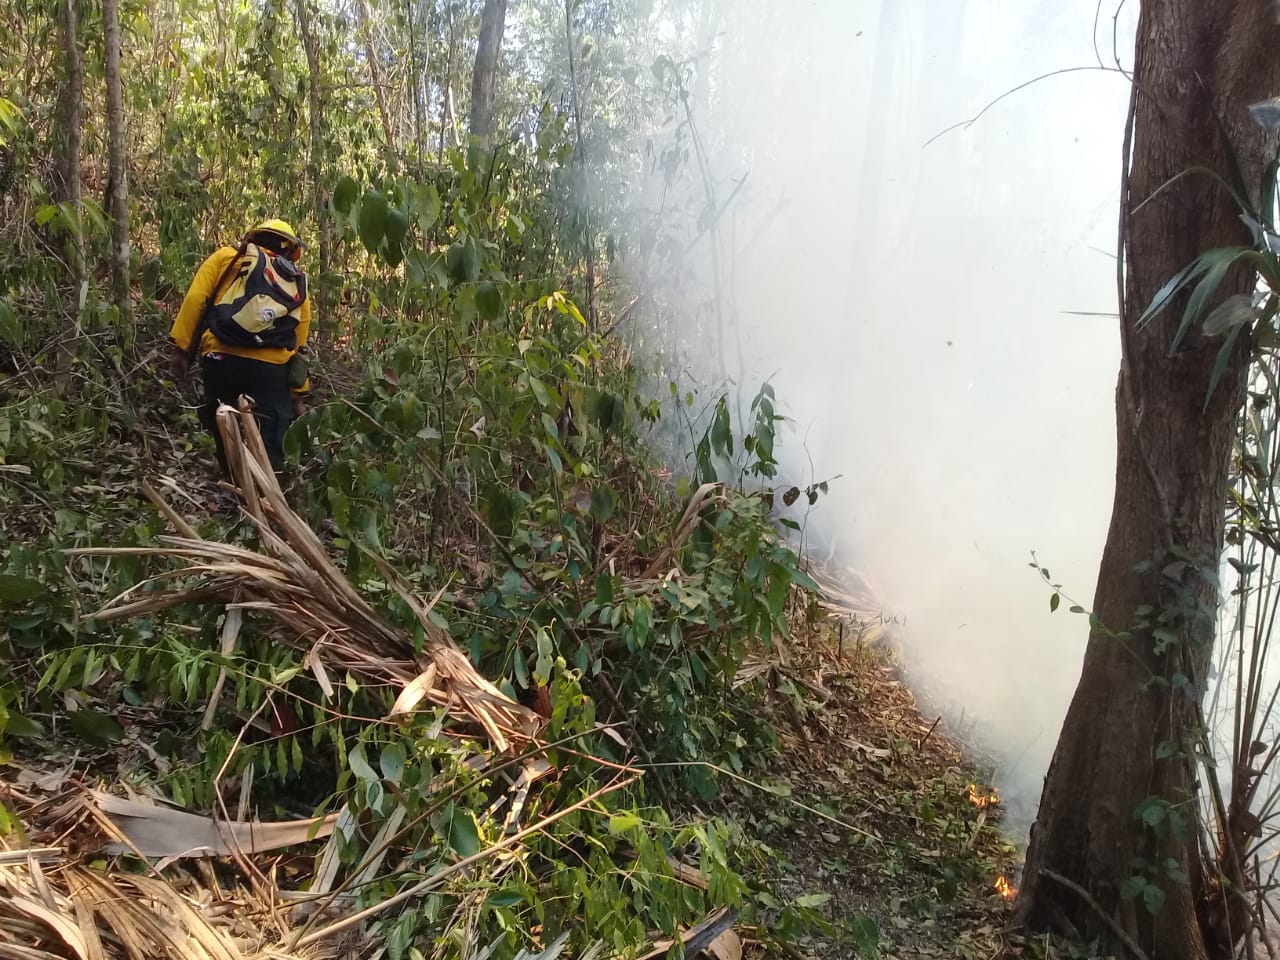 Las autoridades hacen un llamado a la población para que eviten los incendios forestales, pues estos causan serios daños en el medioambiente. (Foto Prensa Libre: Cortesía Conap)